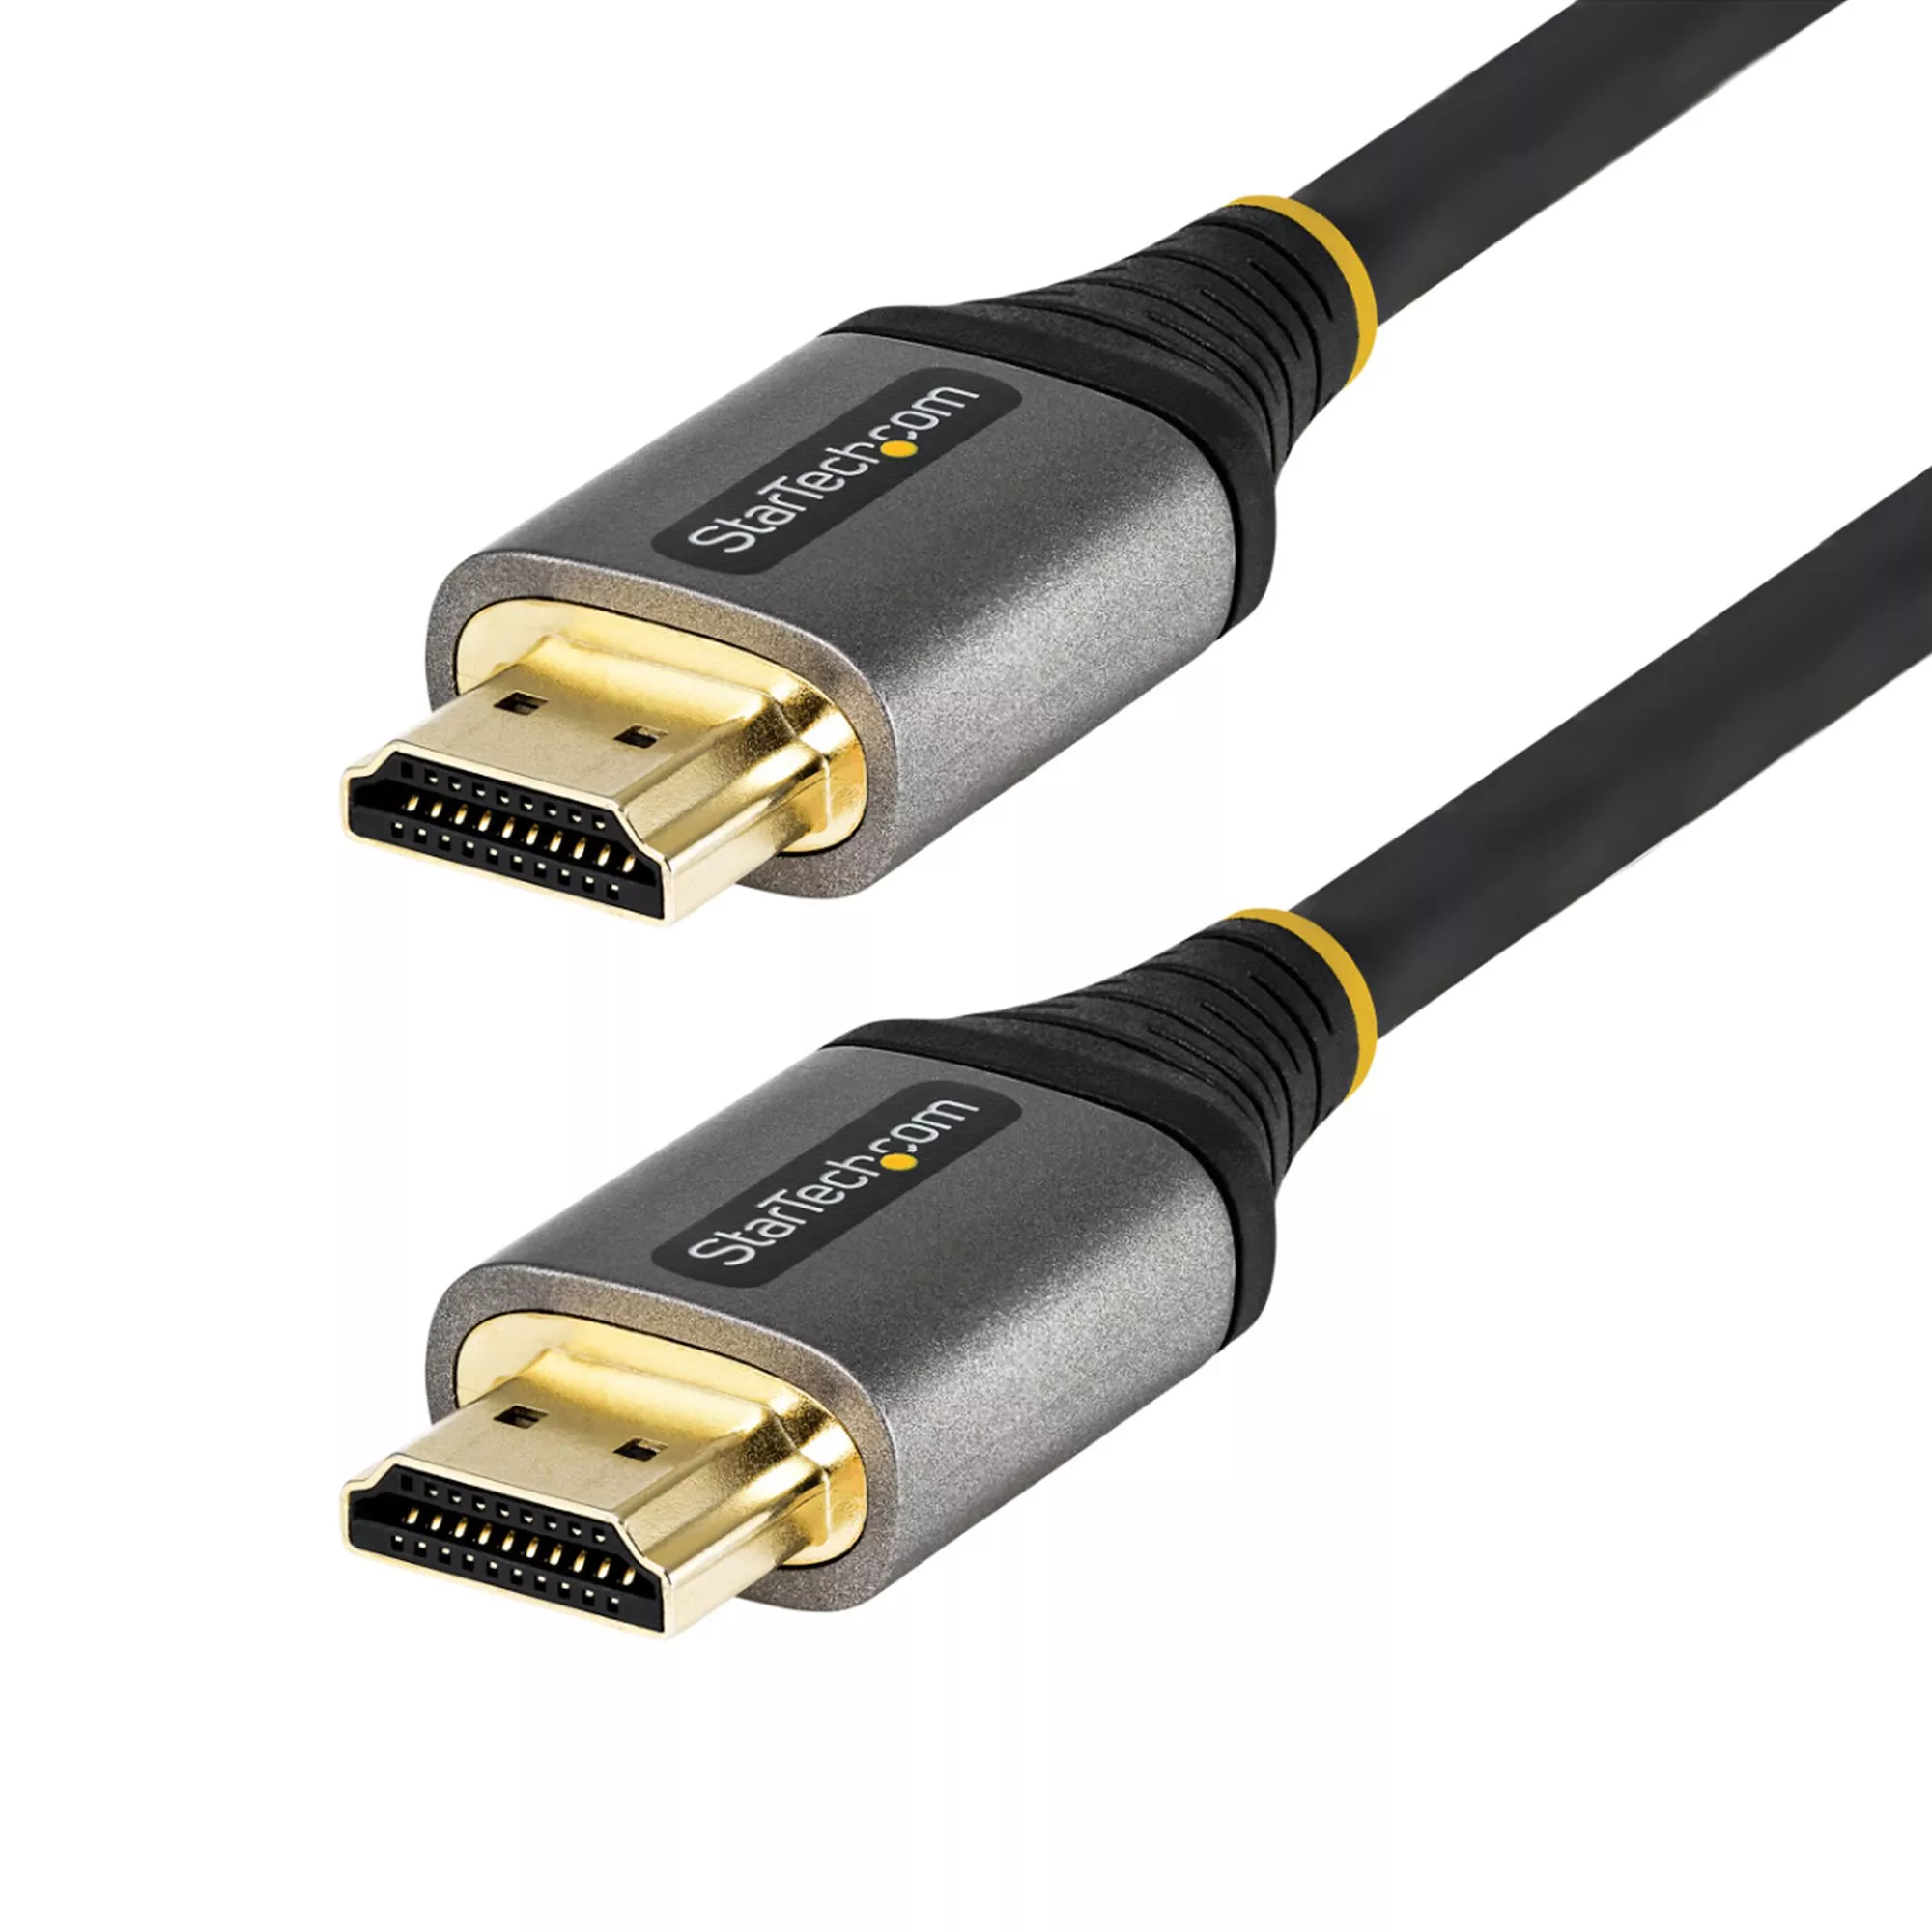 Revendeur officiel StarTech.com Câble HDMI 2.1 8k de 50cm - Cordon HDMI